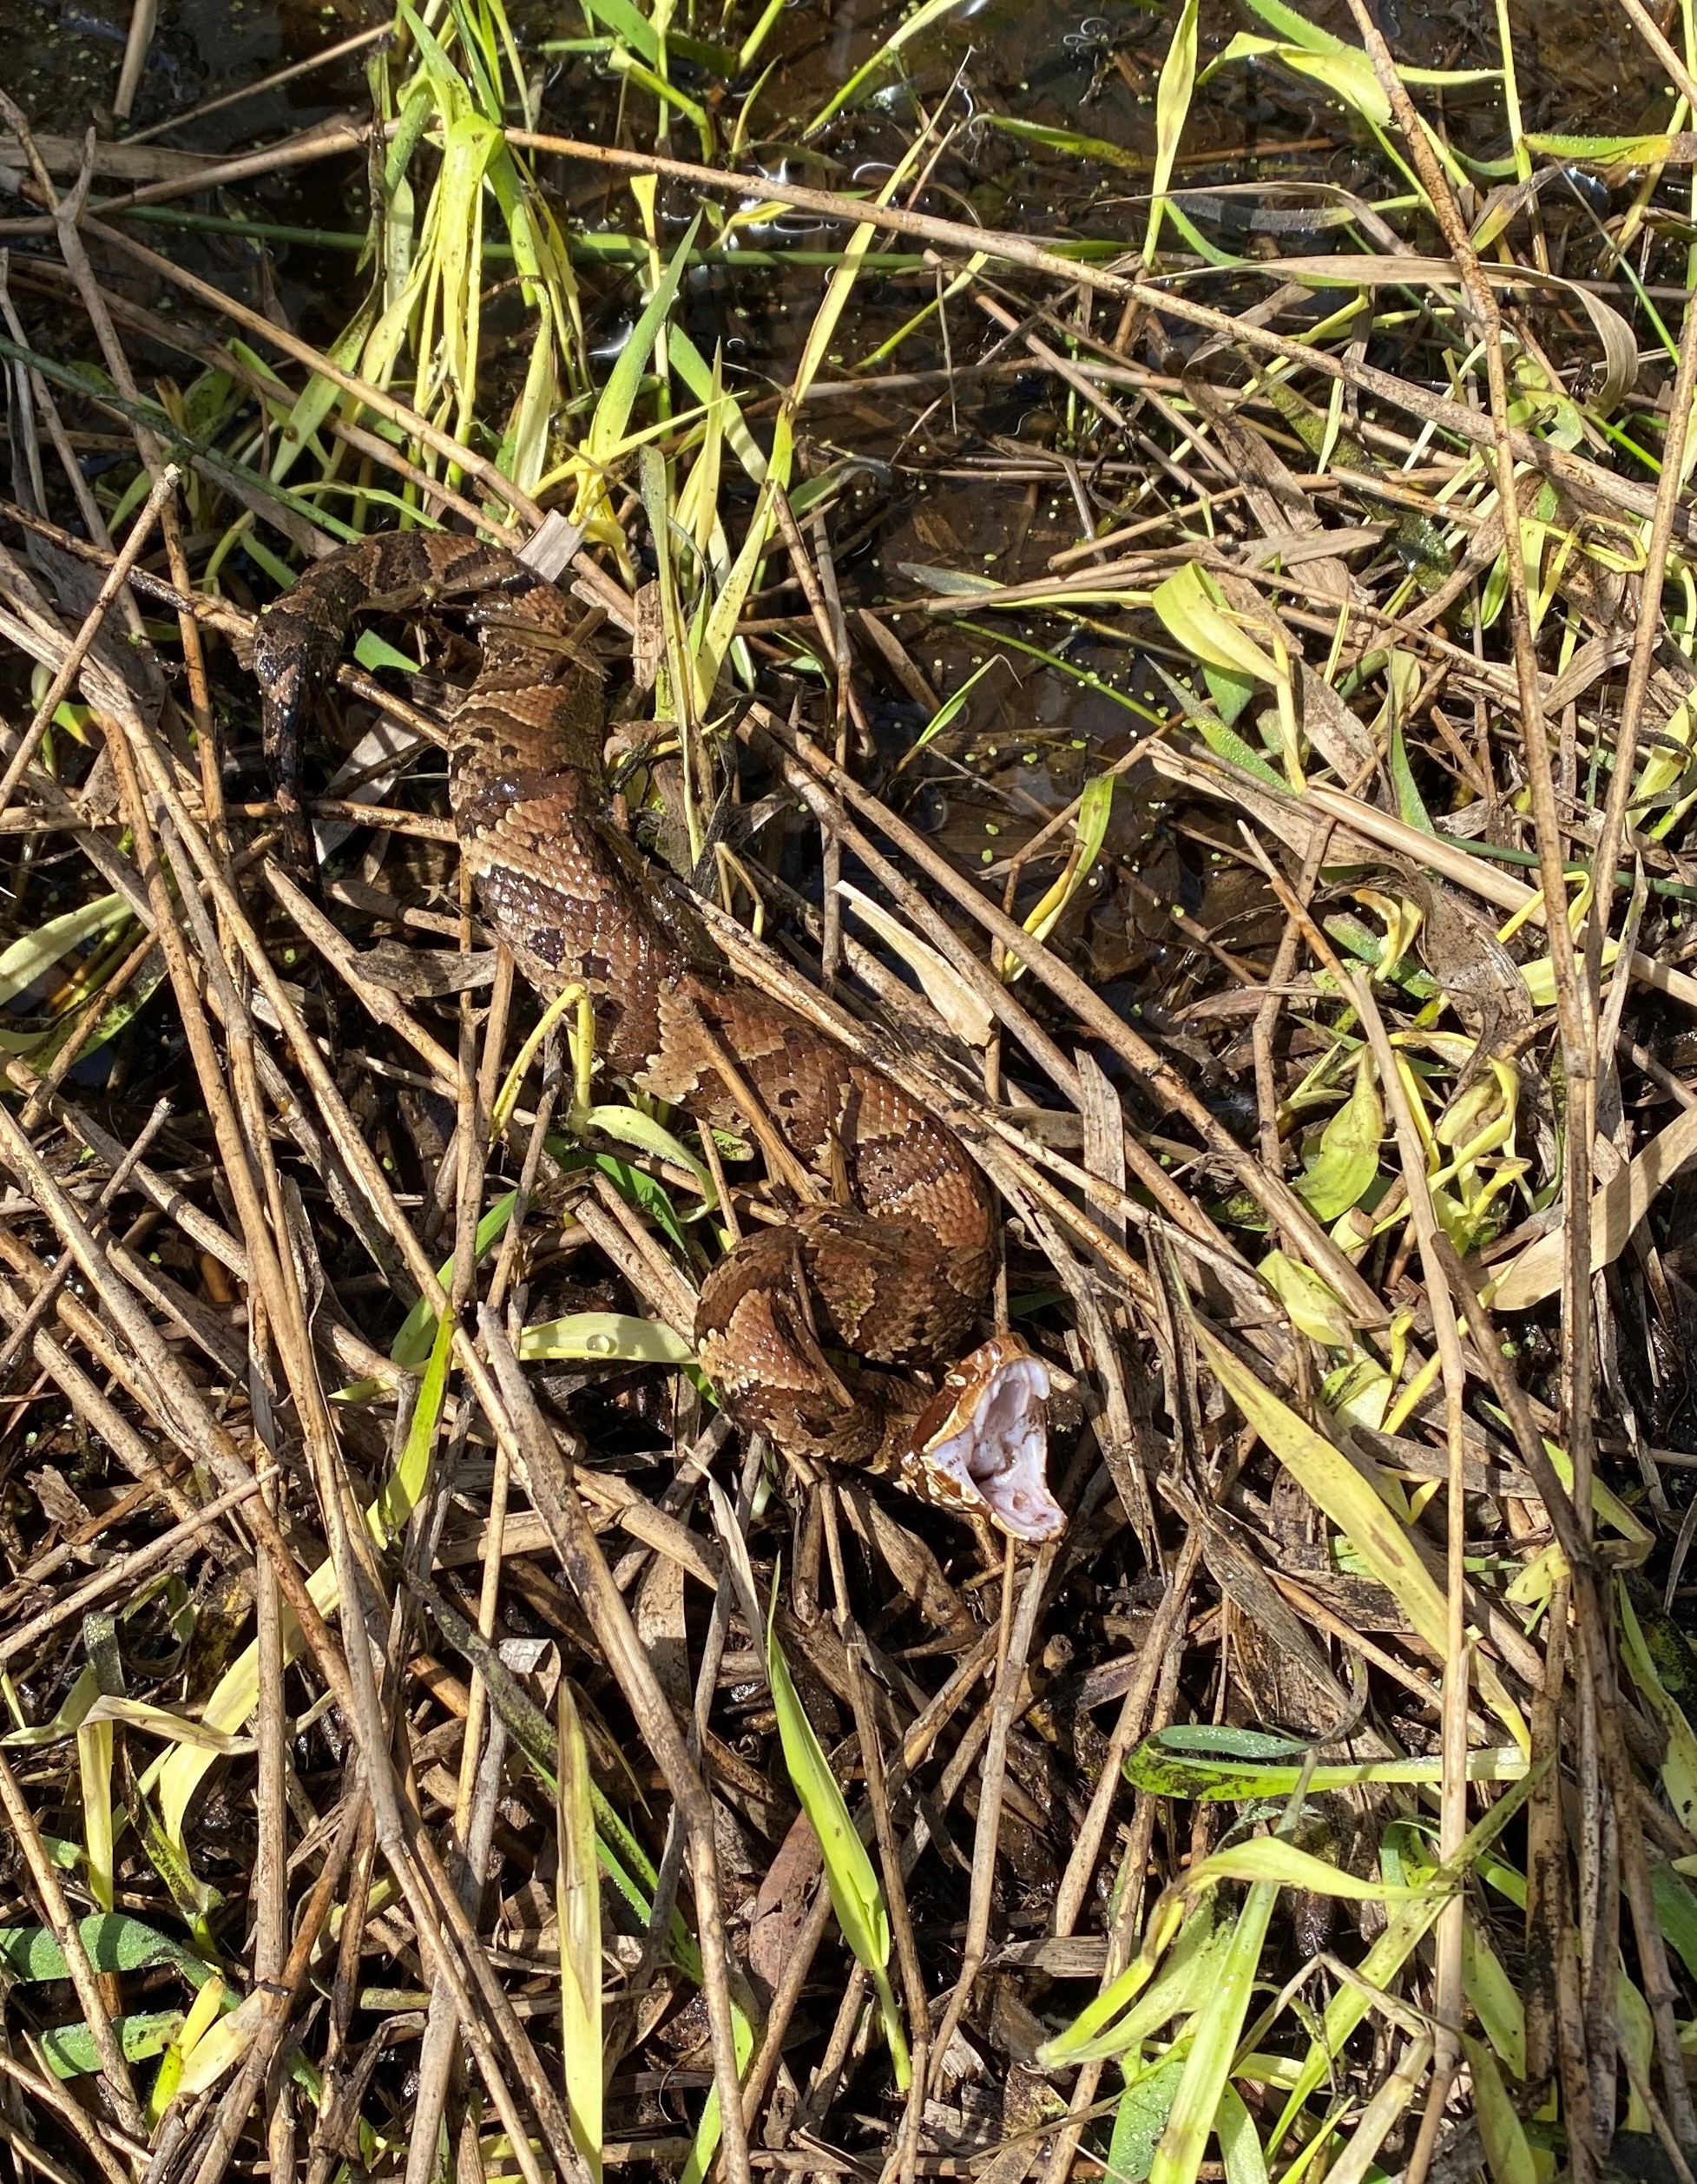 Do Corn Snakes Play Dead? (Sullivans Island, SC) : r/whatsthissnake